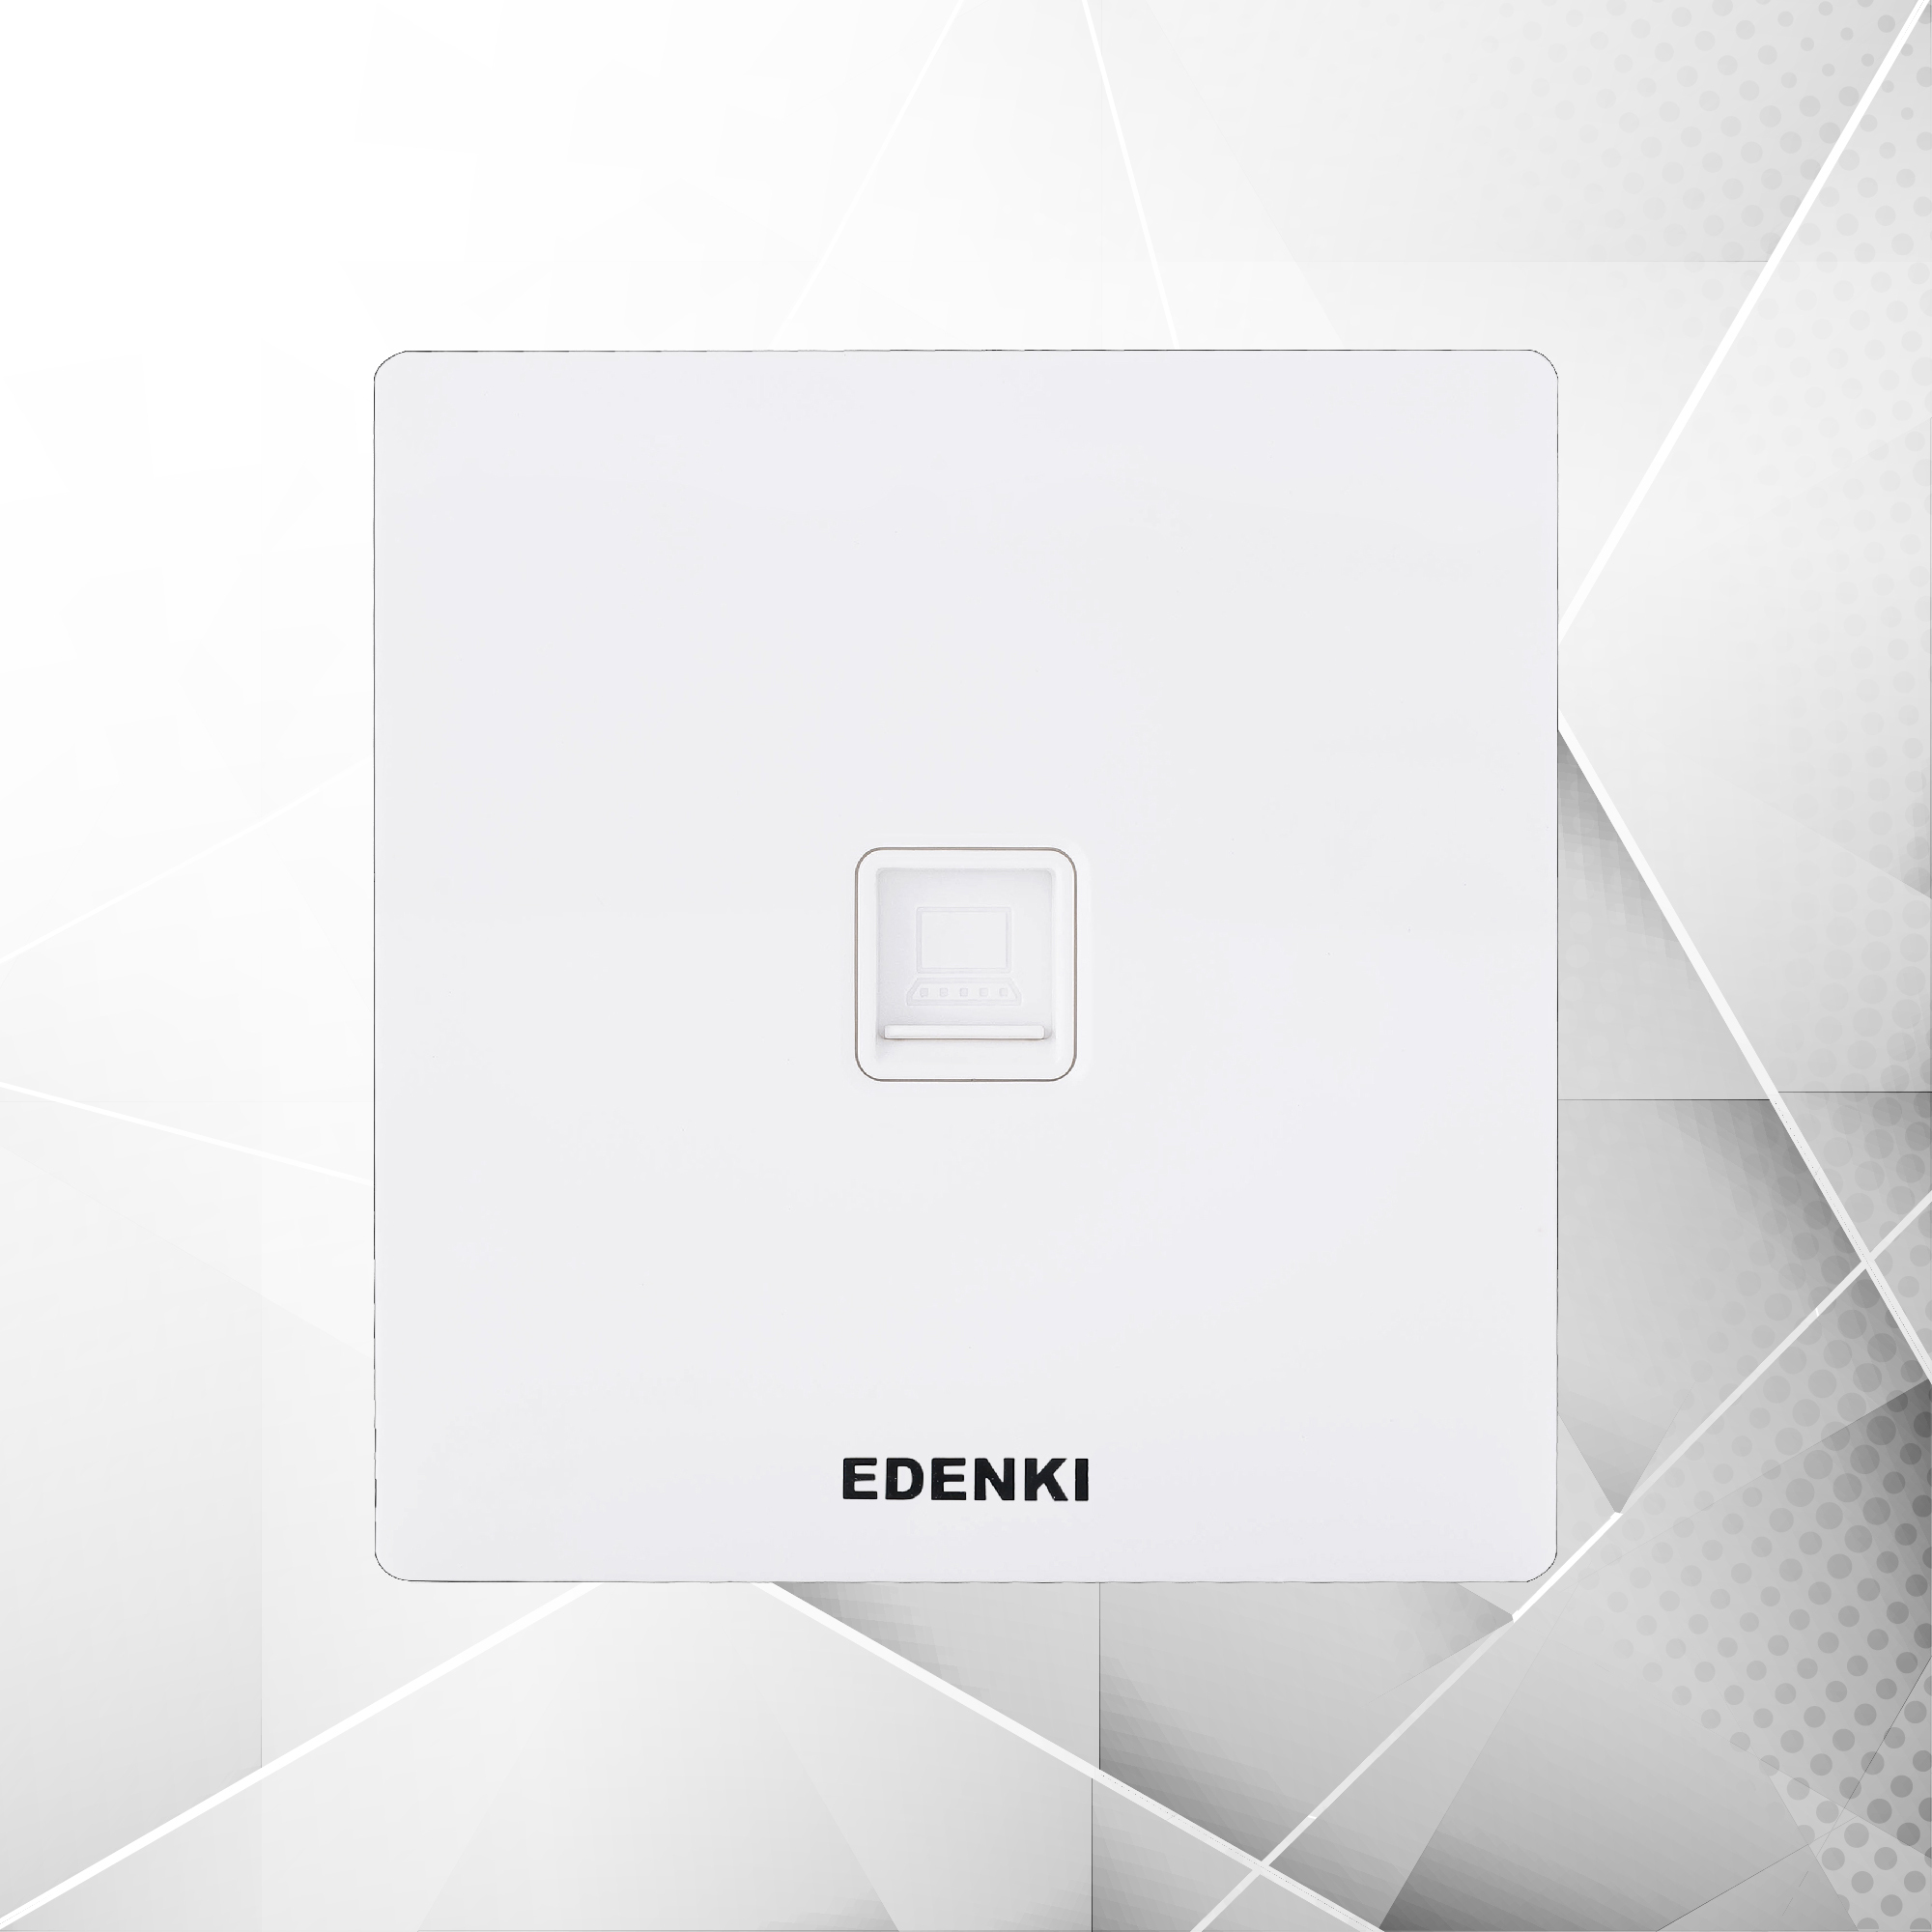 Bộ ổ cắm mạng đơn Edenki EE-C501